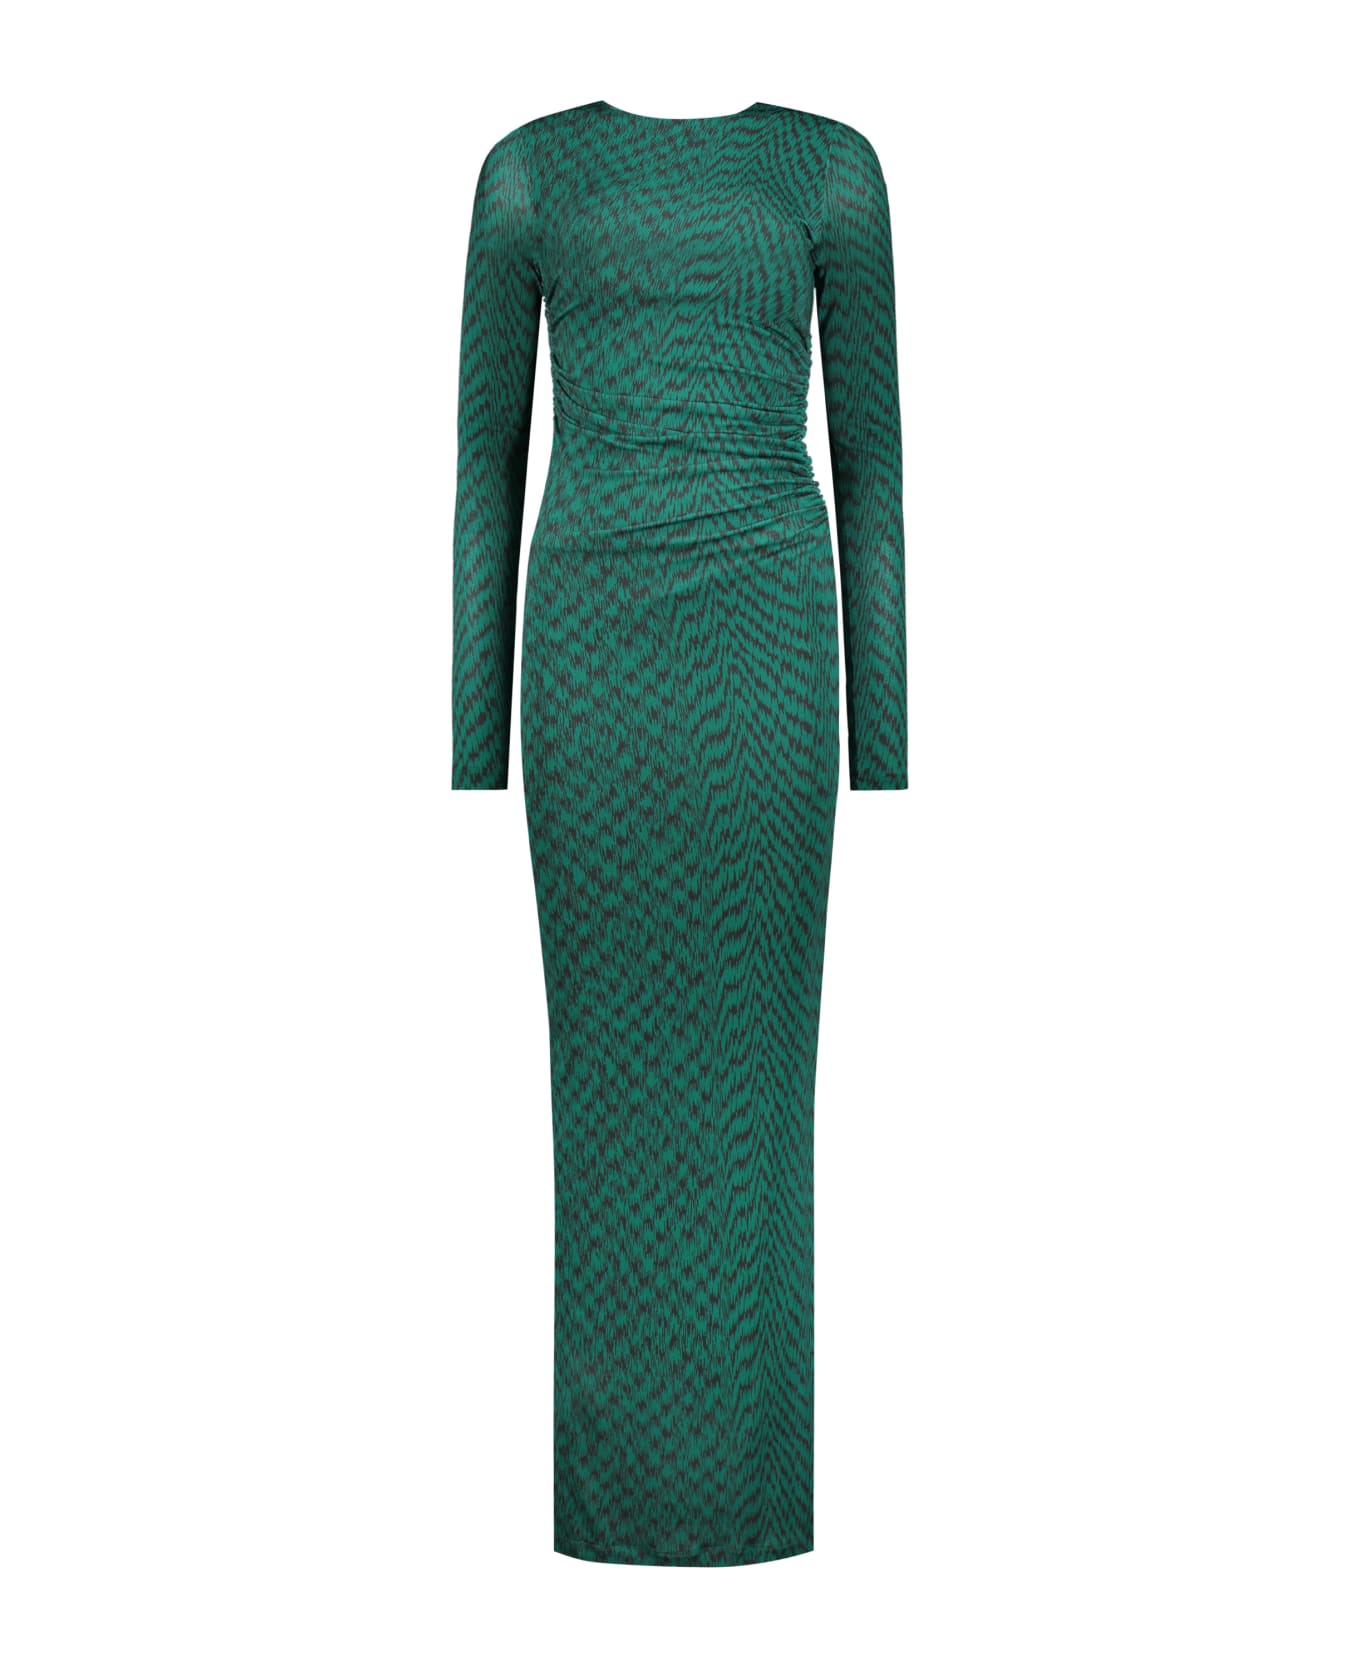 Missoni Printed Maxi Dress - green